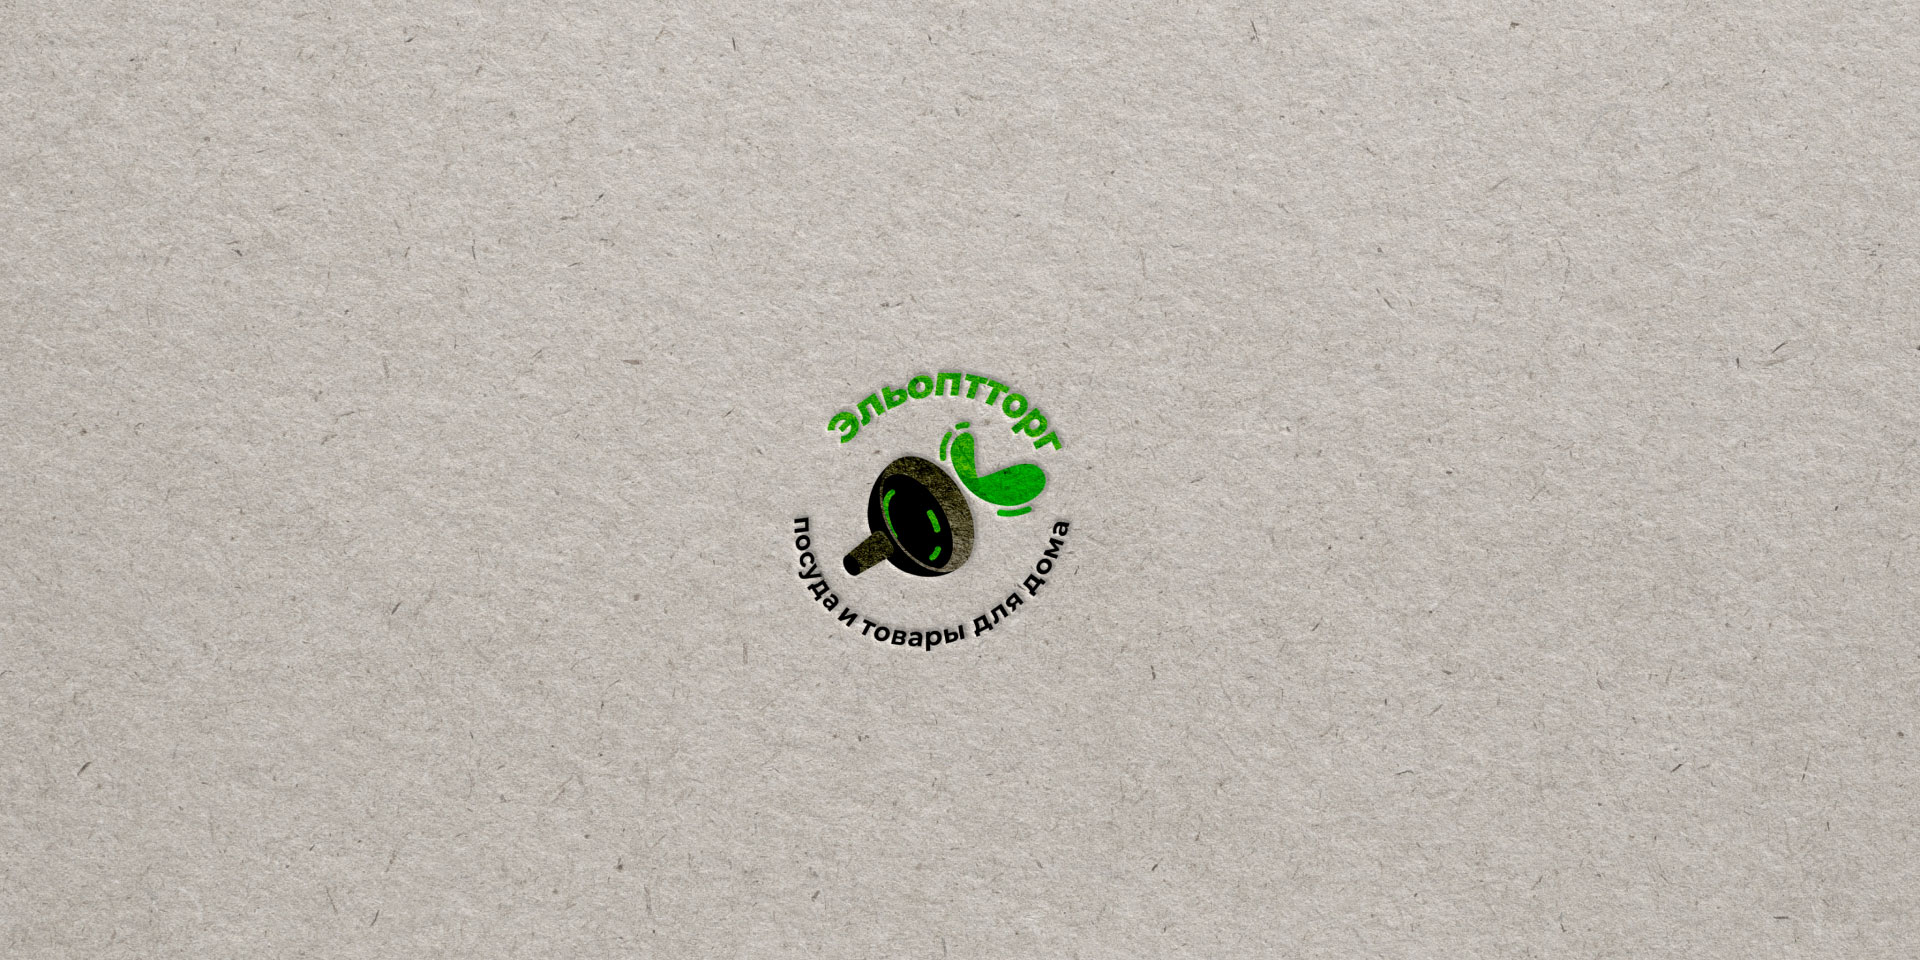 Разработка логотипа для компании по продаже посуды и товаров для дома в Ярцево